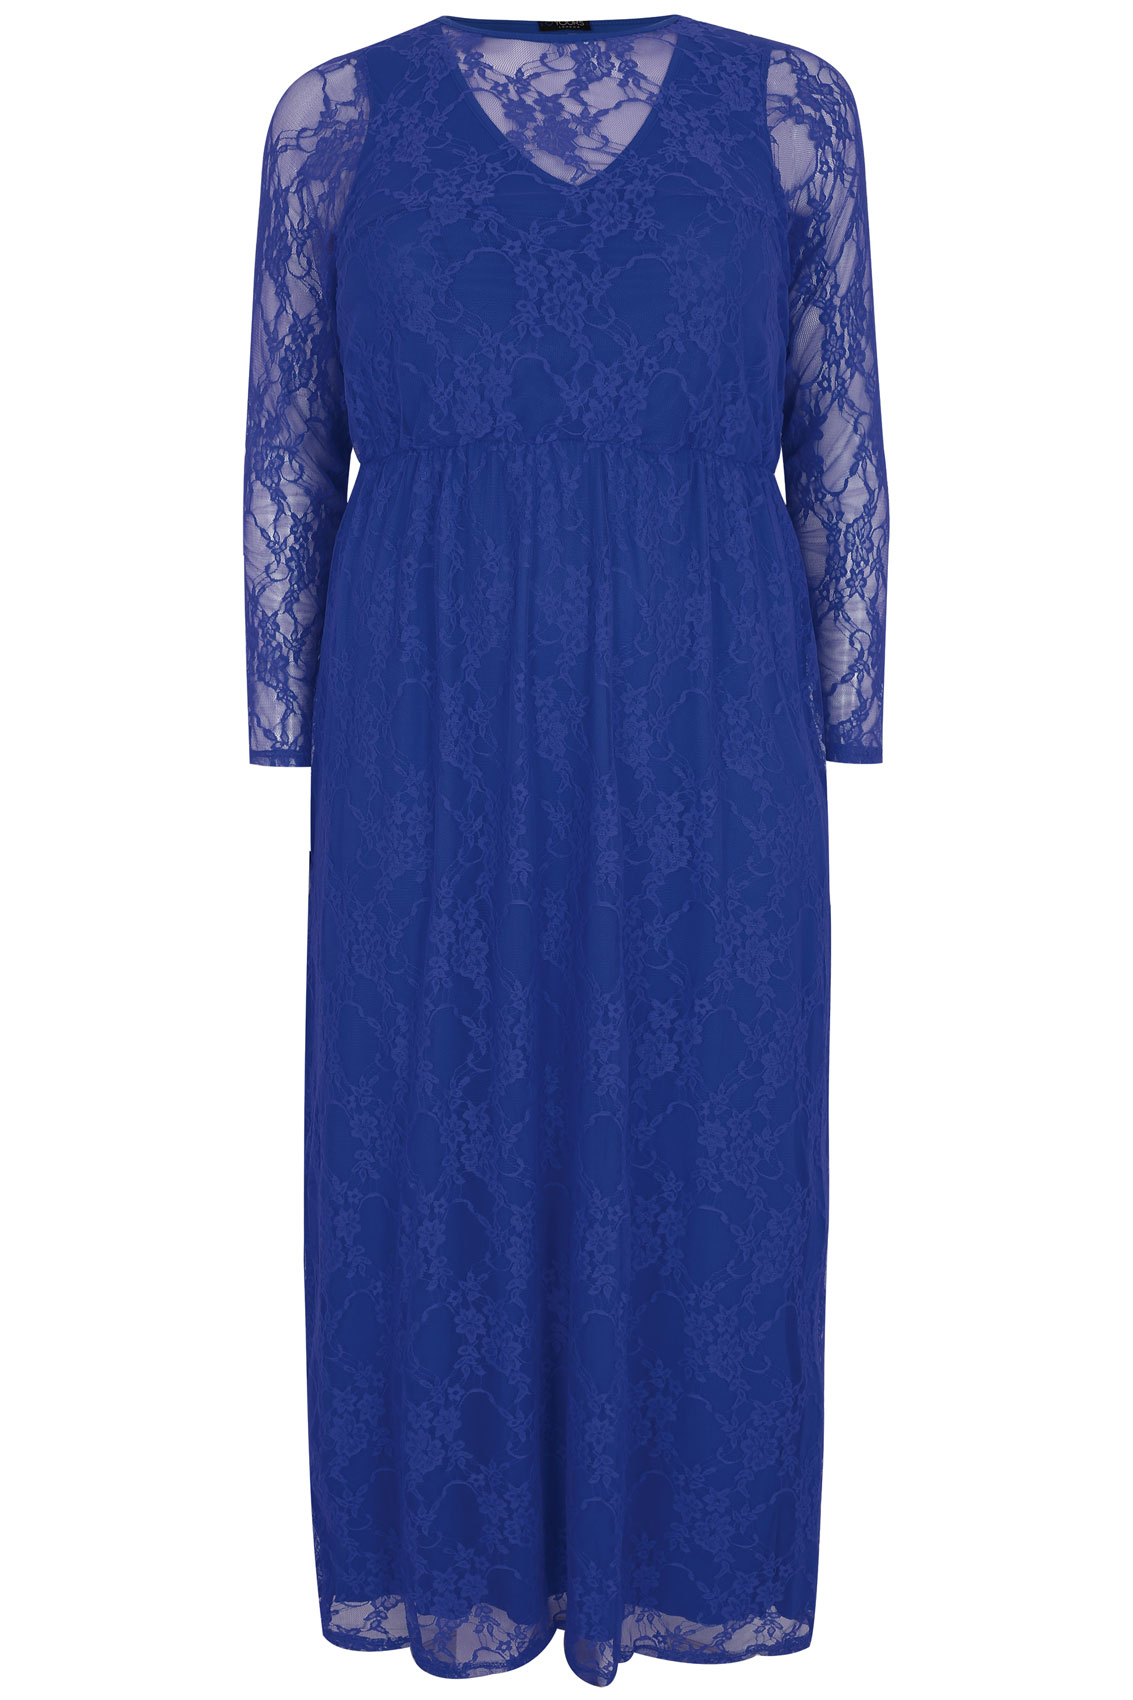 Royal blue dress size 16